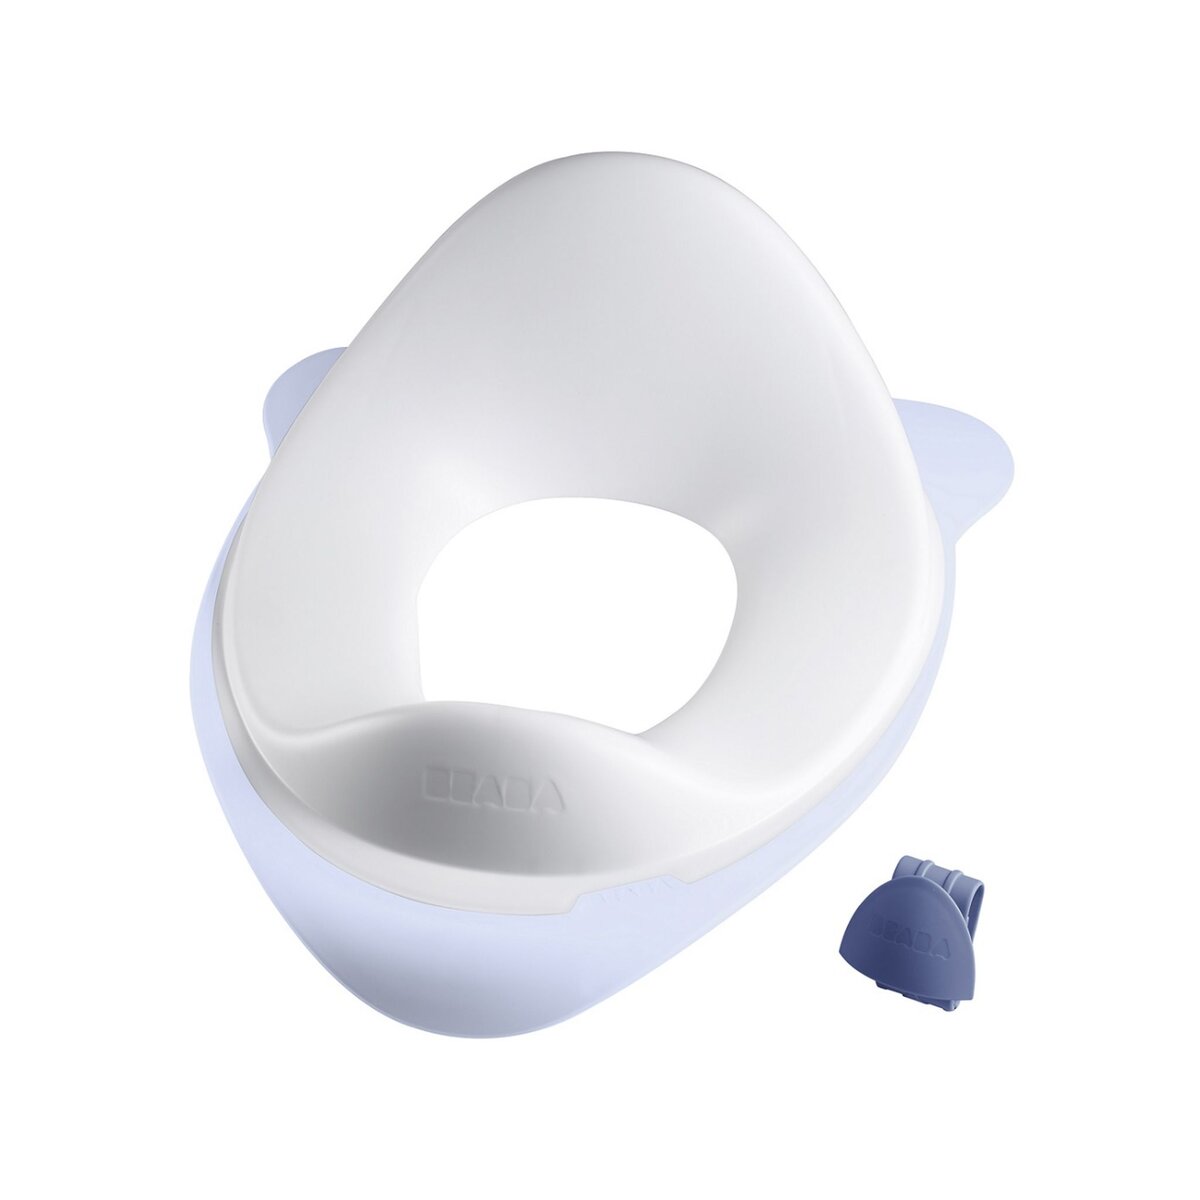 BEABA Réducteur de toilette - Blanc - parme